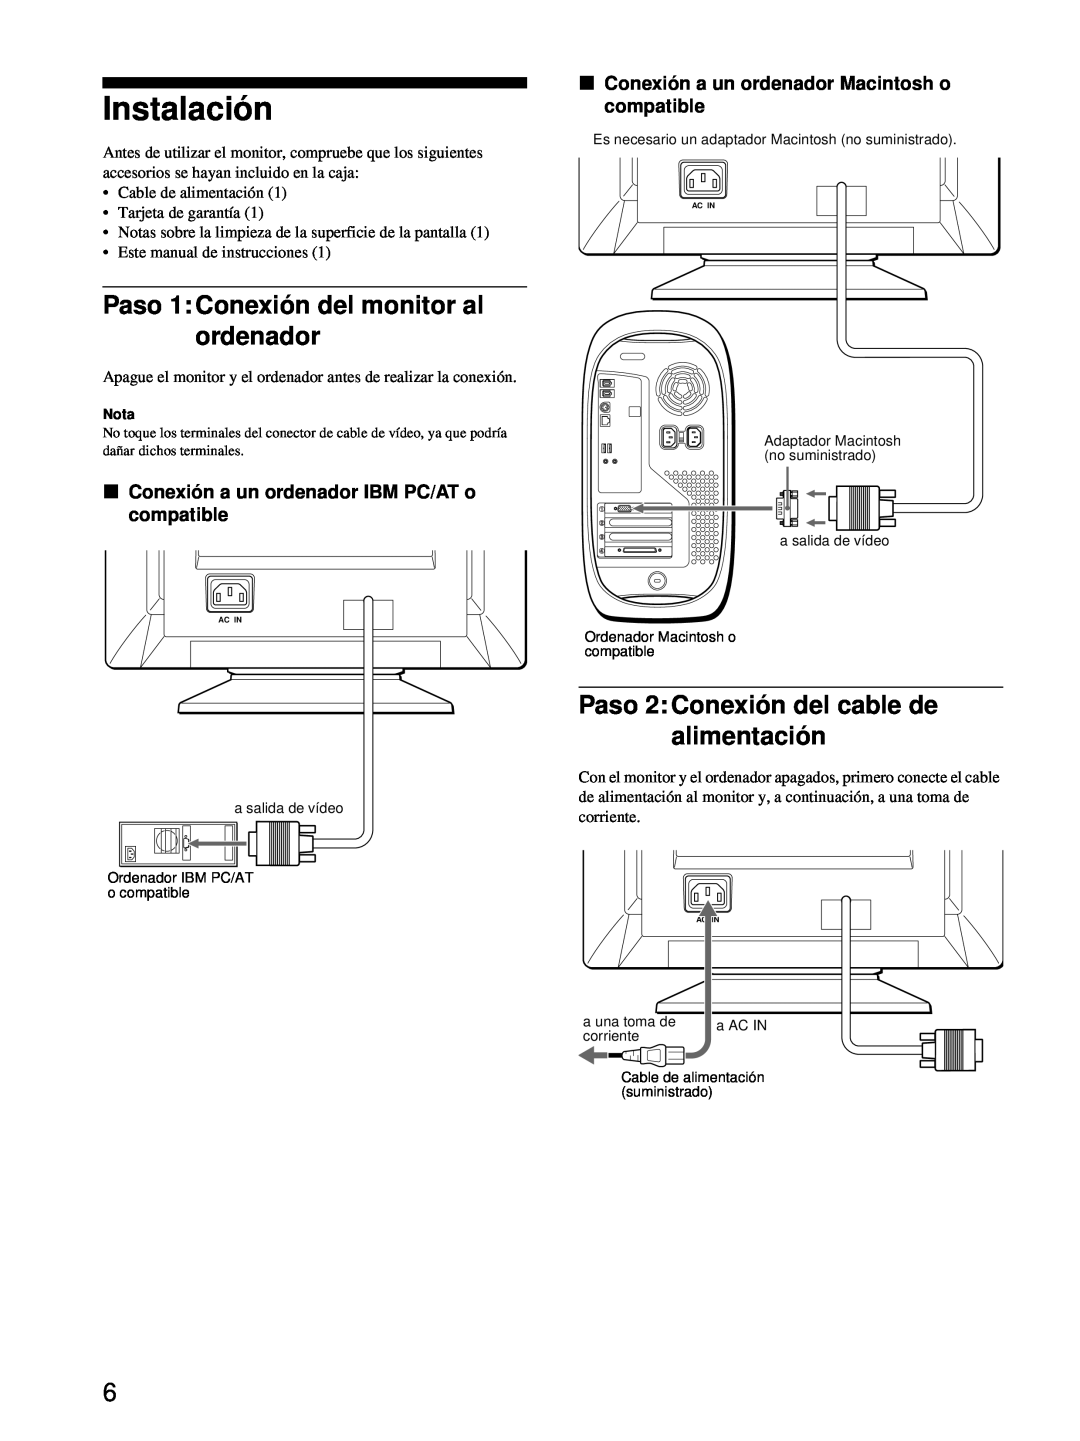 Sony CPD-E100 manual Instalación, Paso 1 Conexión del monitor al ordenador, Paso 2 Conexión del cable de alimentación 